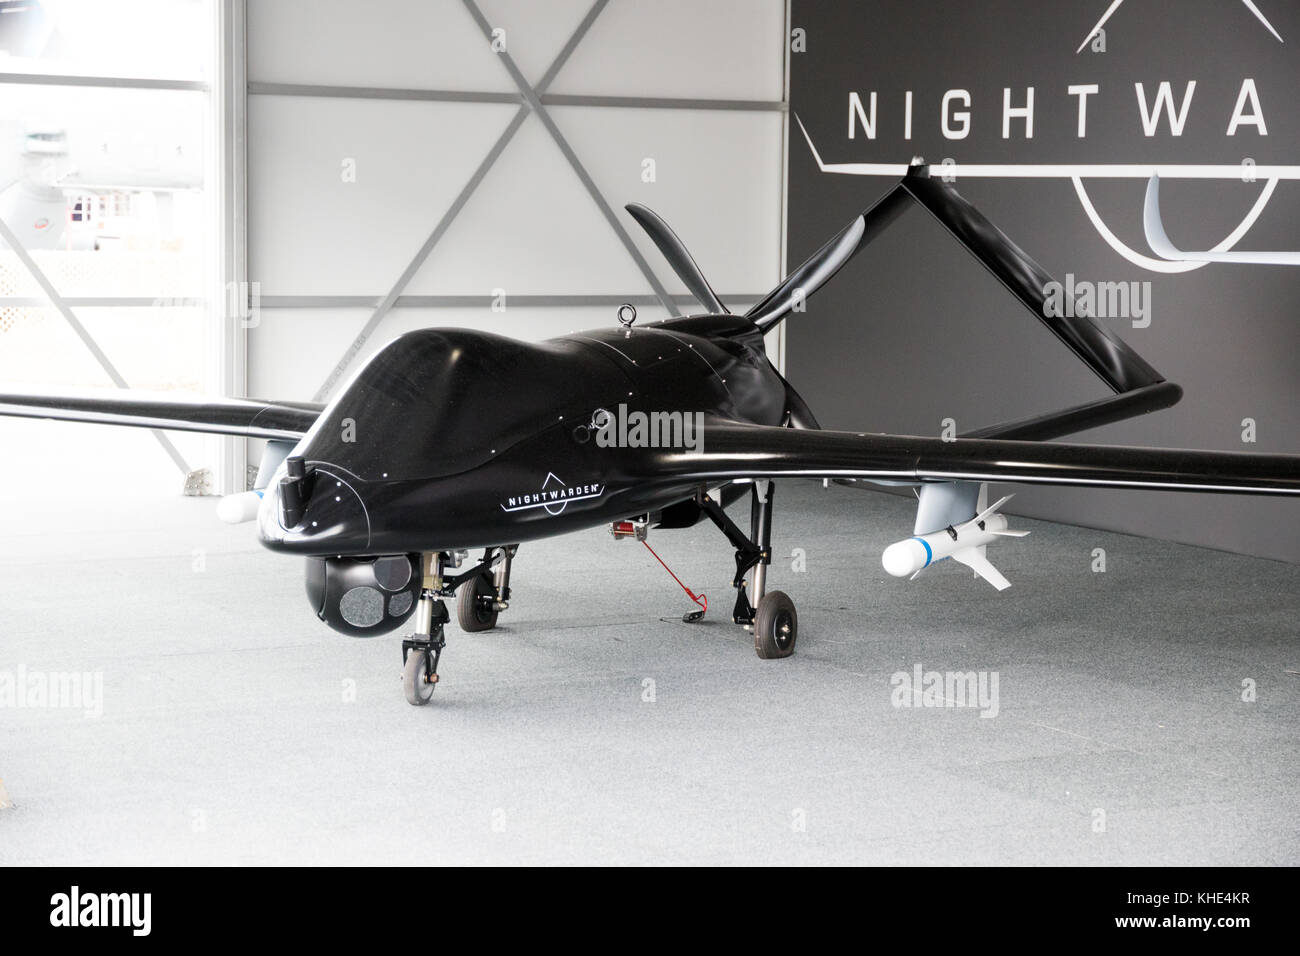 PARIS, FRANCE - 23 JUIN 2017 : drone militaire UAV Nightwarden de Textron au salon de l'Air de Paris 2017. Banque D'Images